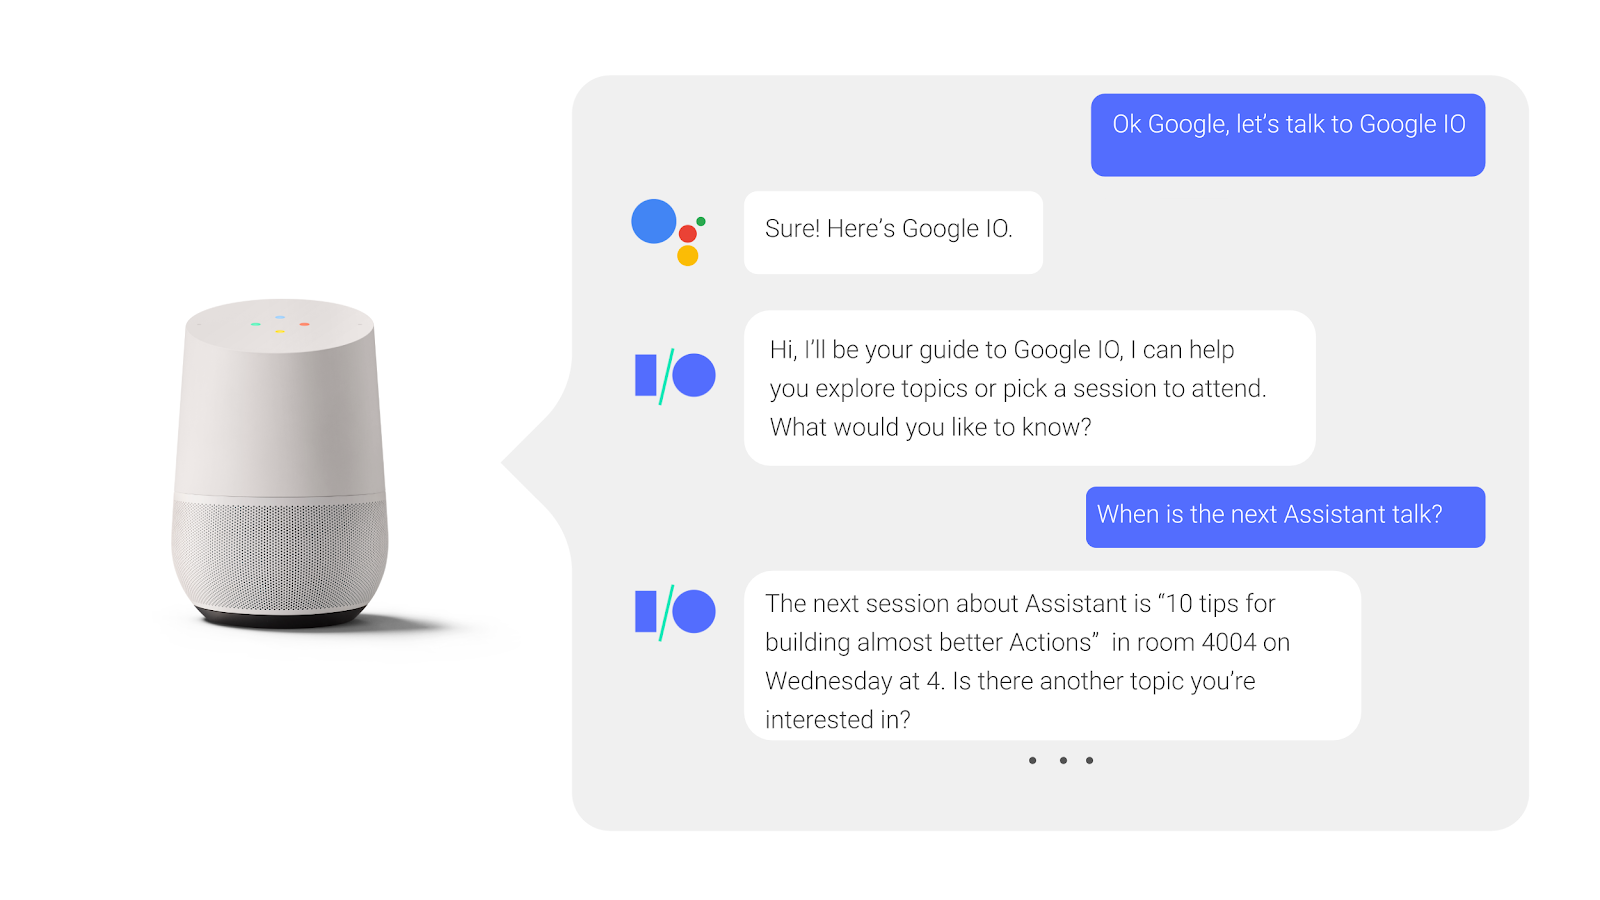 Trong cuộc trò chuyện qua lại với Trợ lý Google, người dùng đặt câu hỏi và nhận câu trả lời khi một phiên hội nghị truyền hình đang diễn ra.